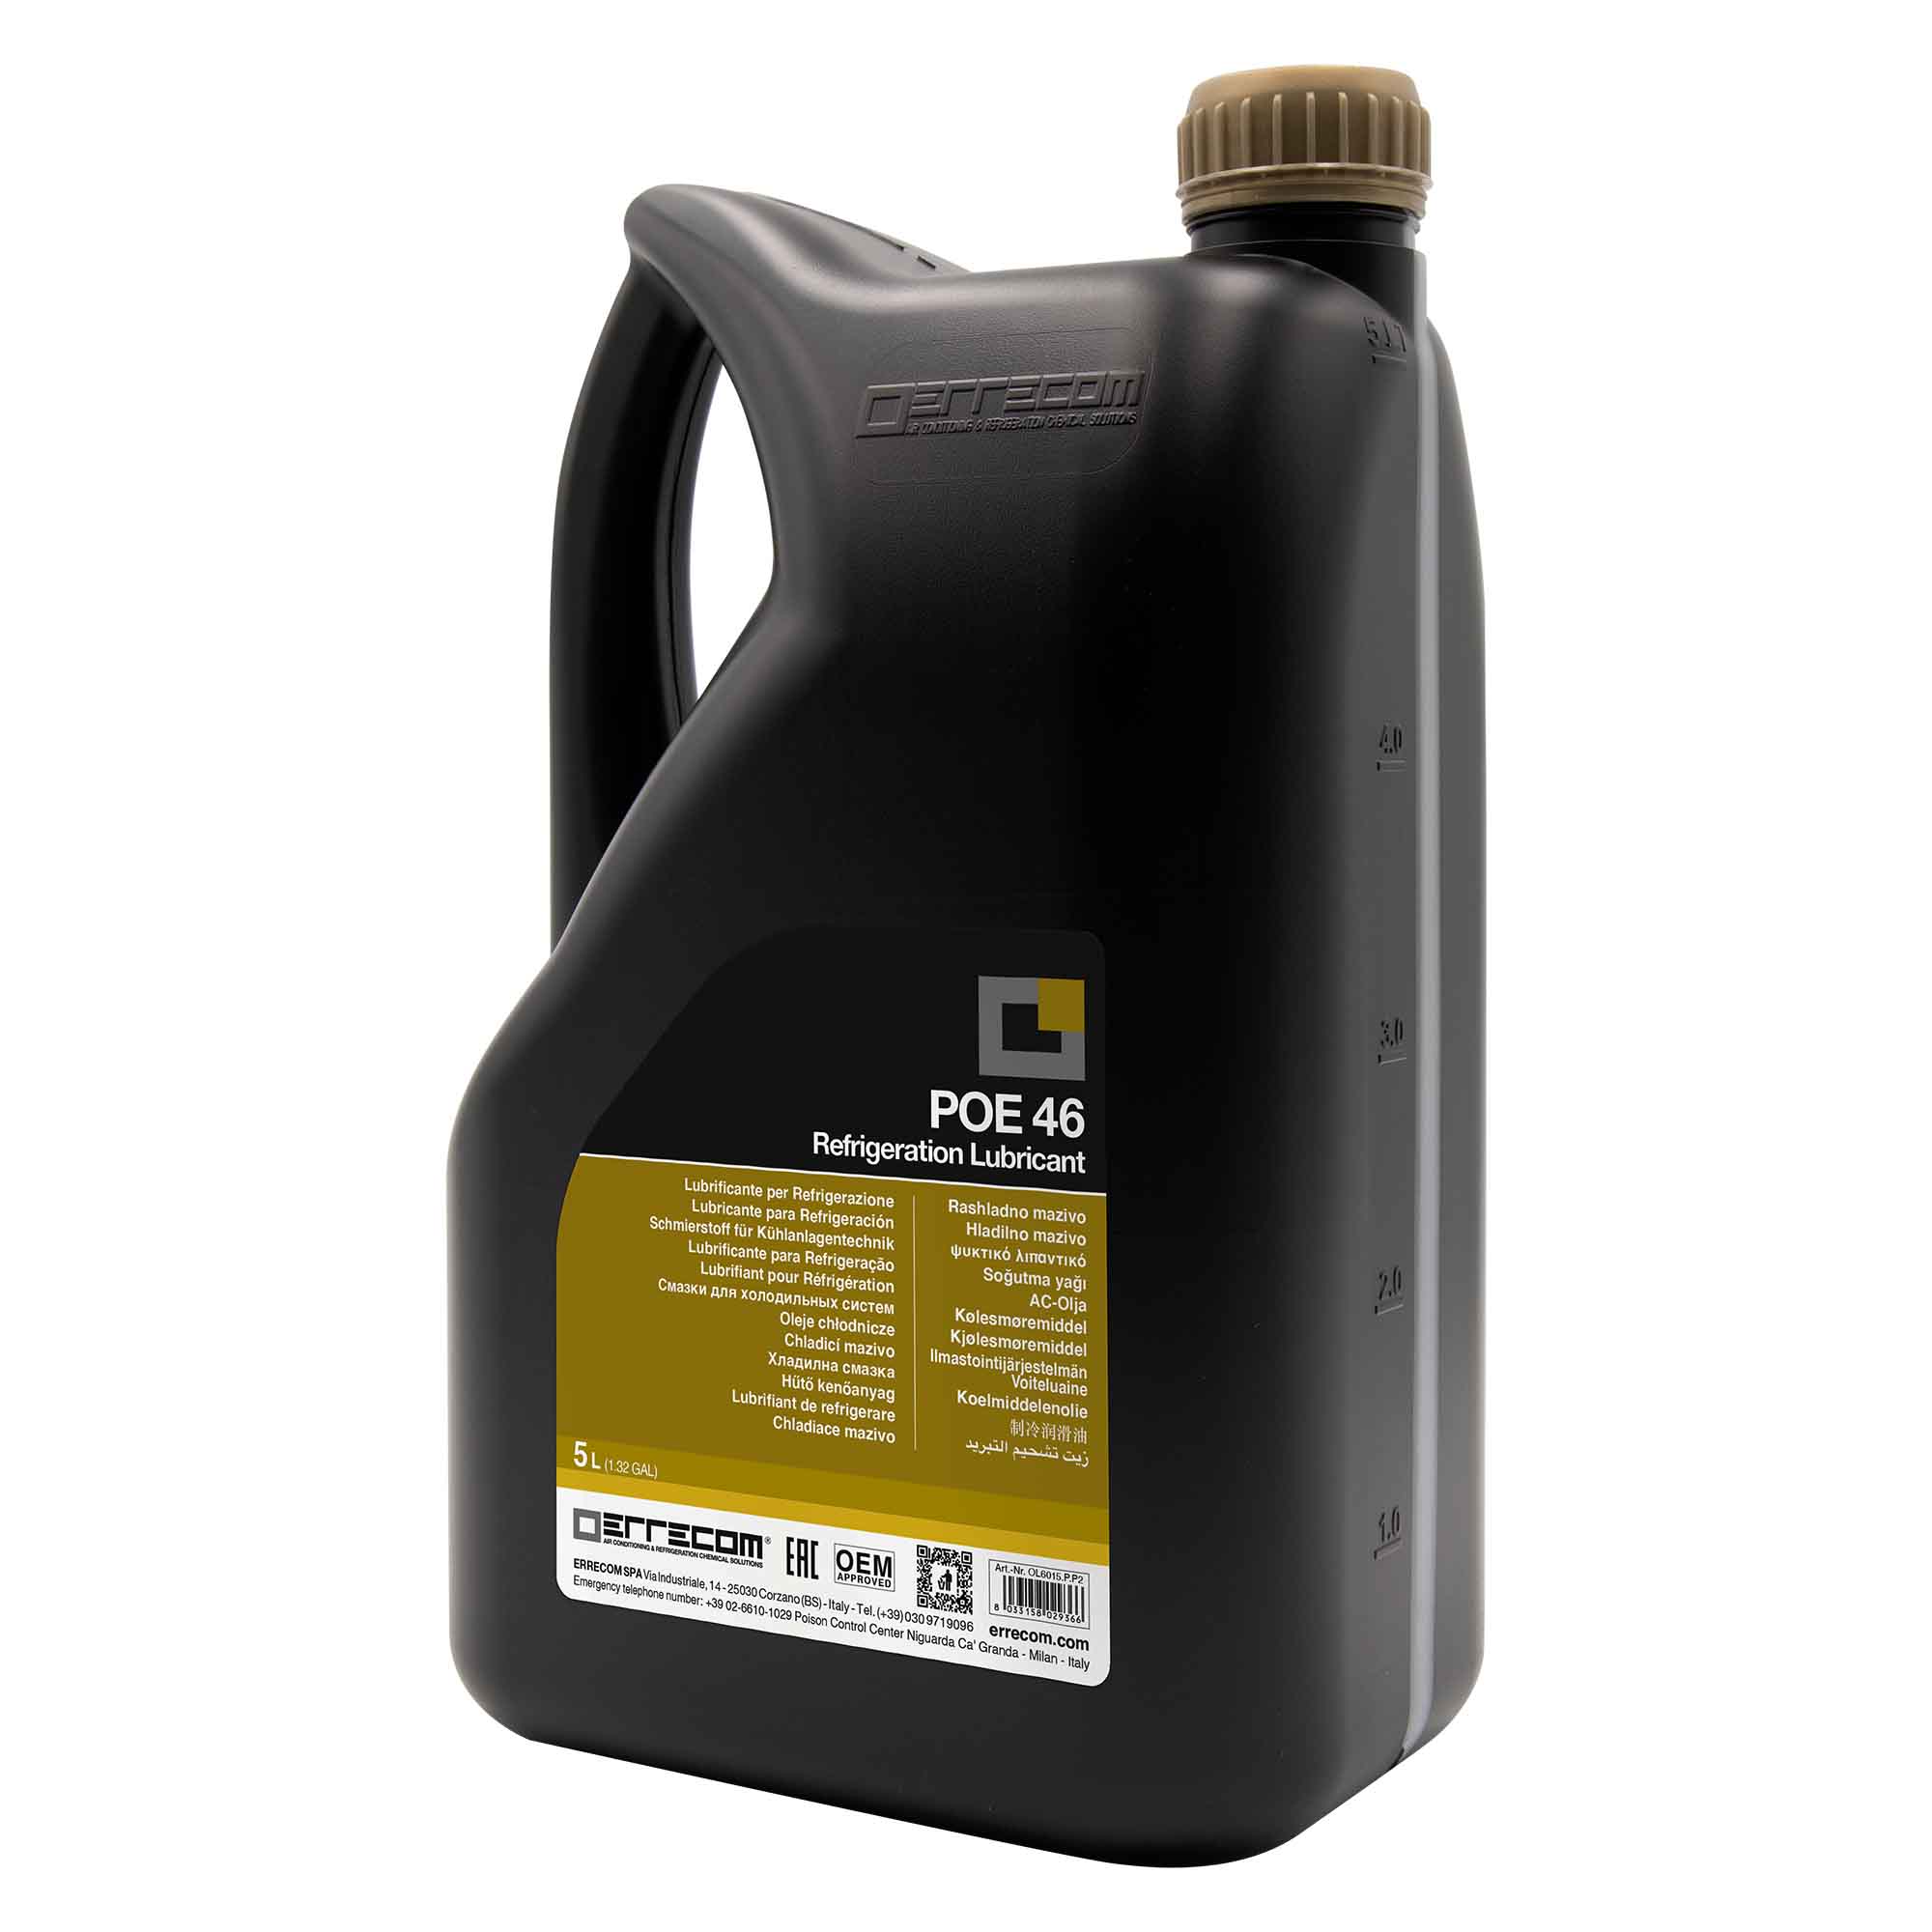 2 x Olio lubrificante R&AC Polyol Estere (POE) Errecom 46 - Tanica in Plastica da 5 lt. - Confezione n° 2 pz. (totale 10 litri)